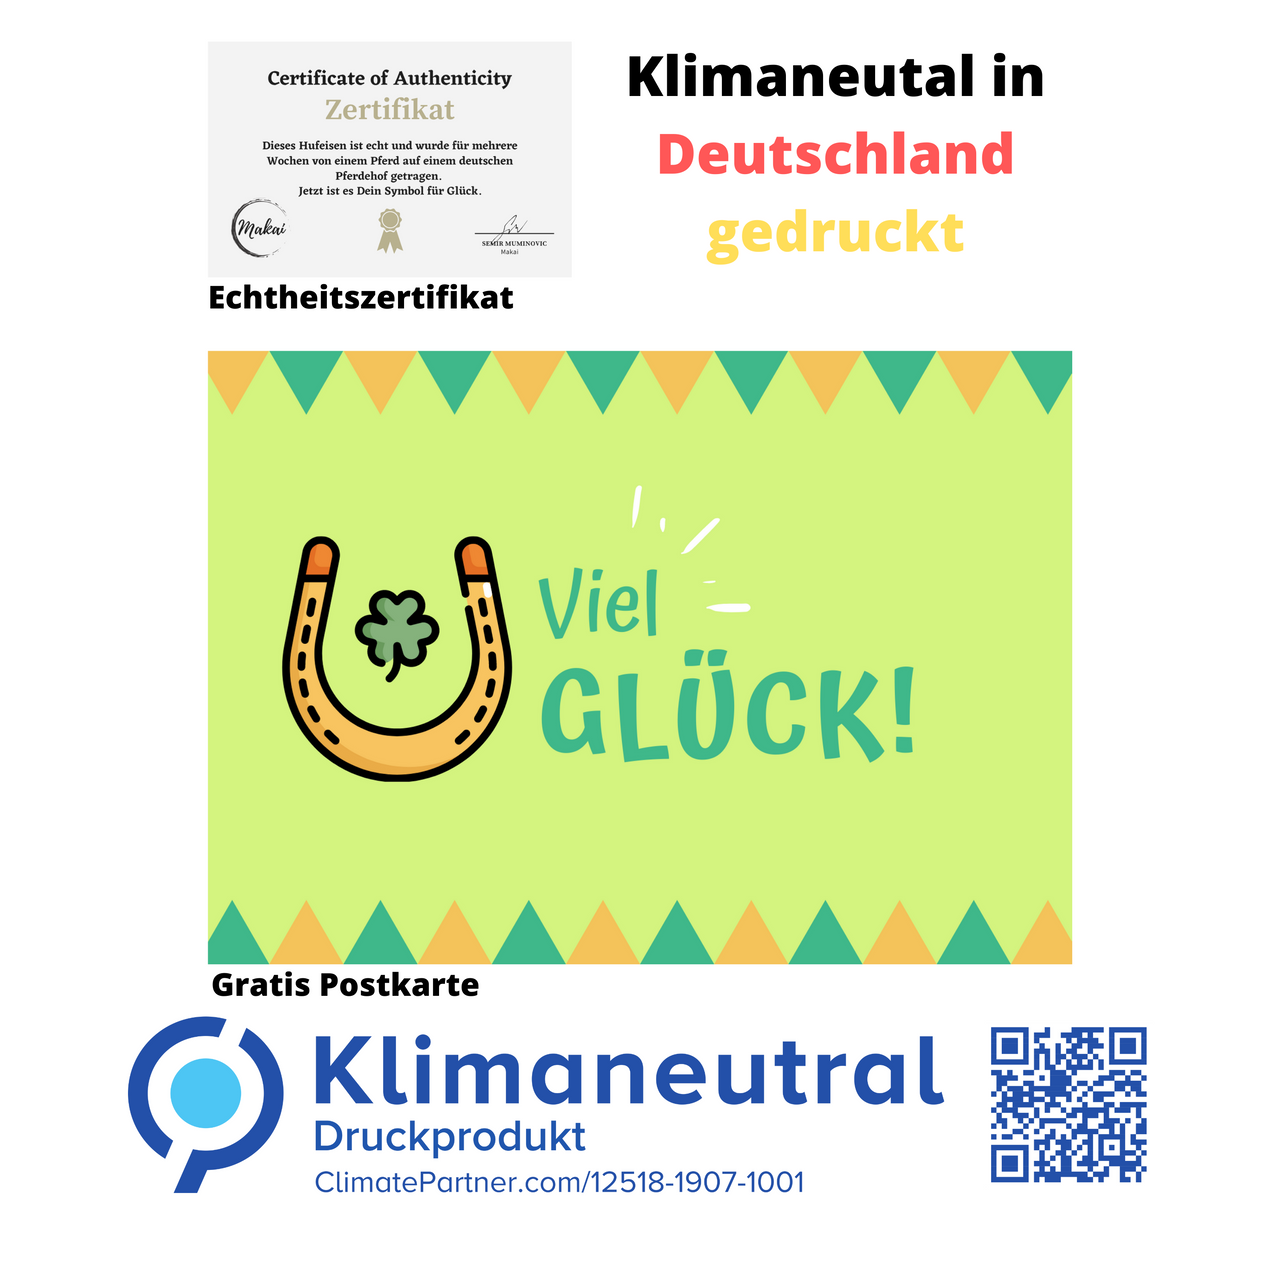 Klimaneutral in Deutschland gedruckt Postkarte Viel Glück zu Hufeisen und Echtheitszertifikat